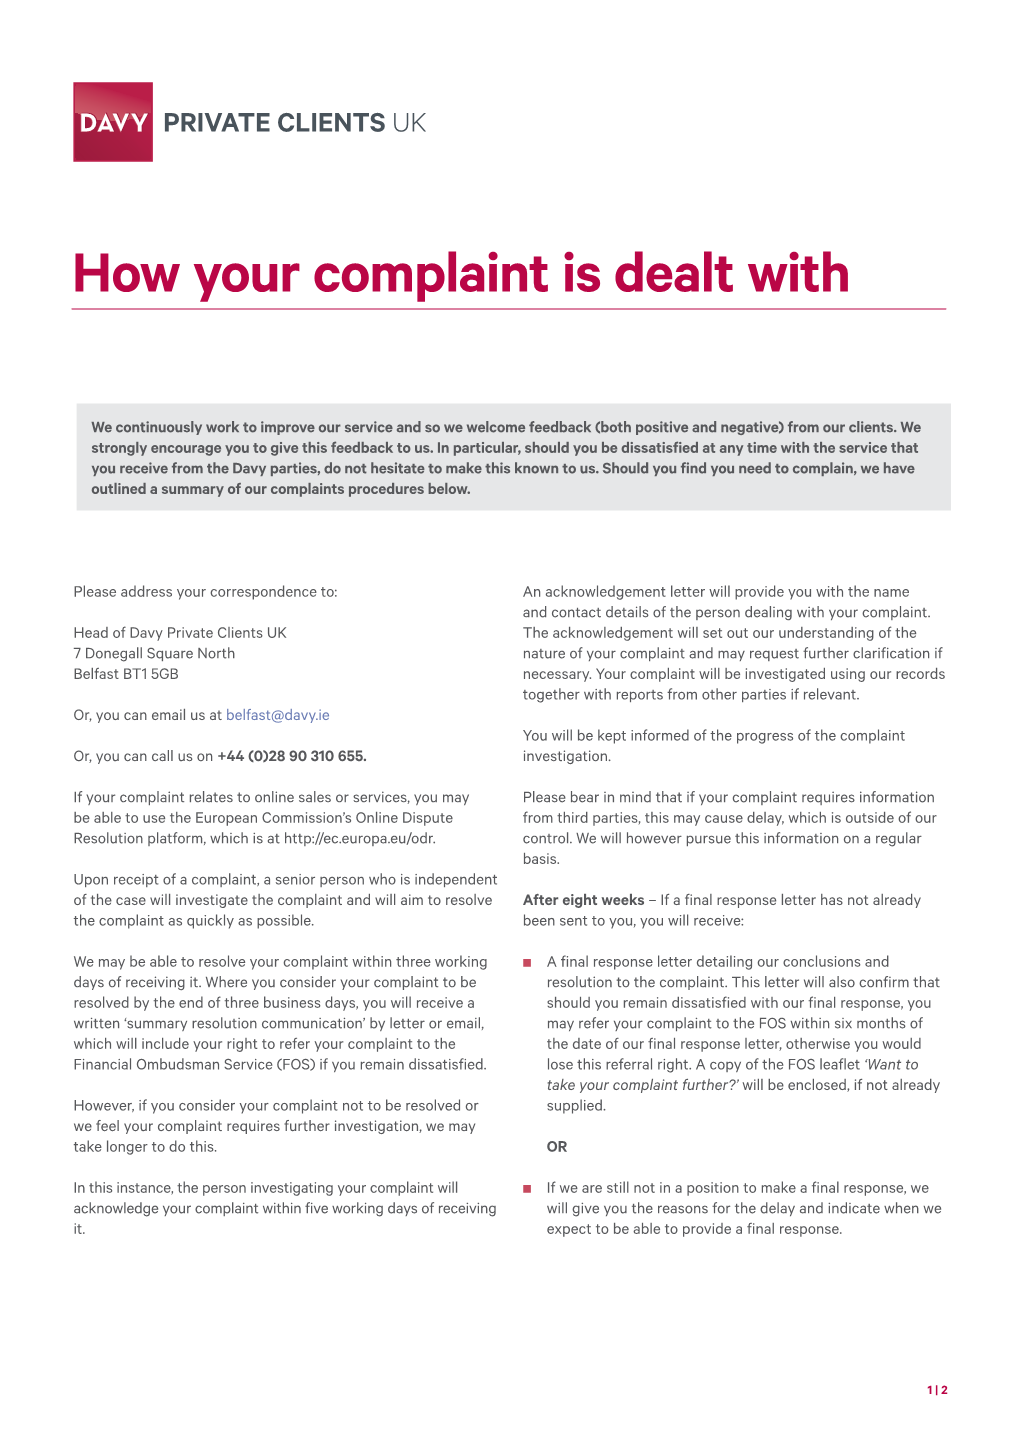 Complaints Procedures Below